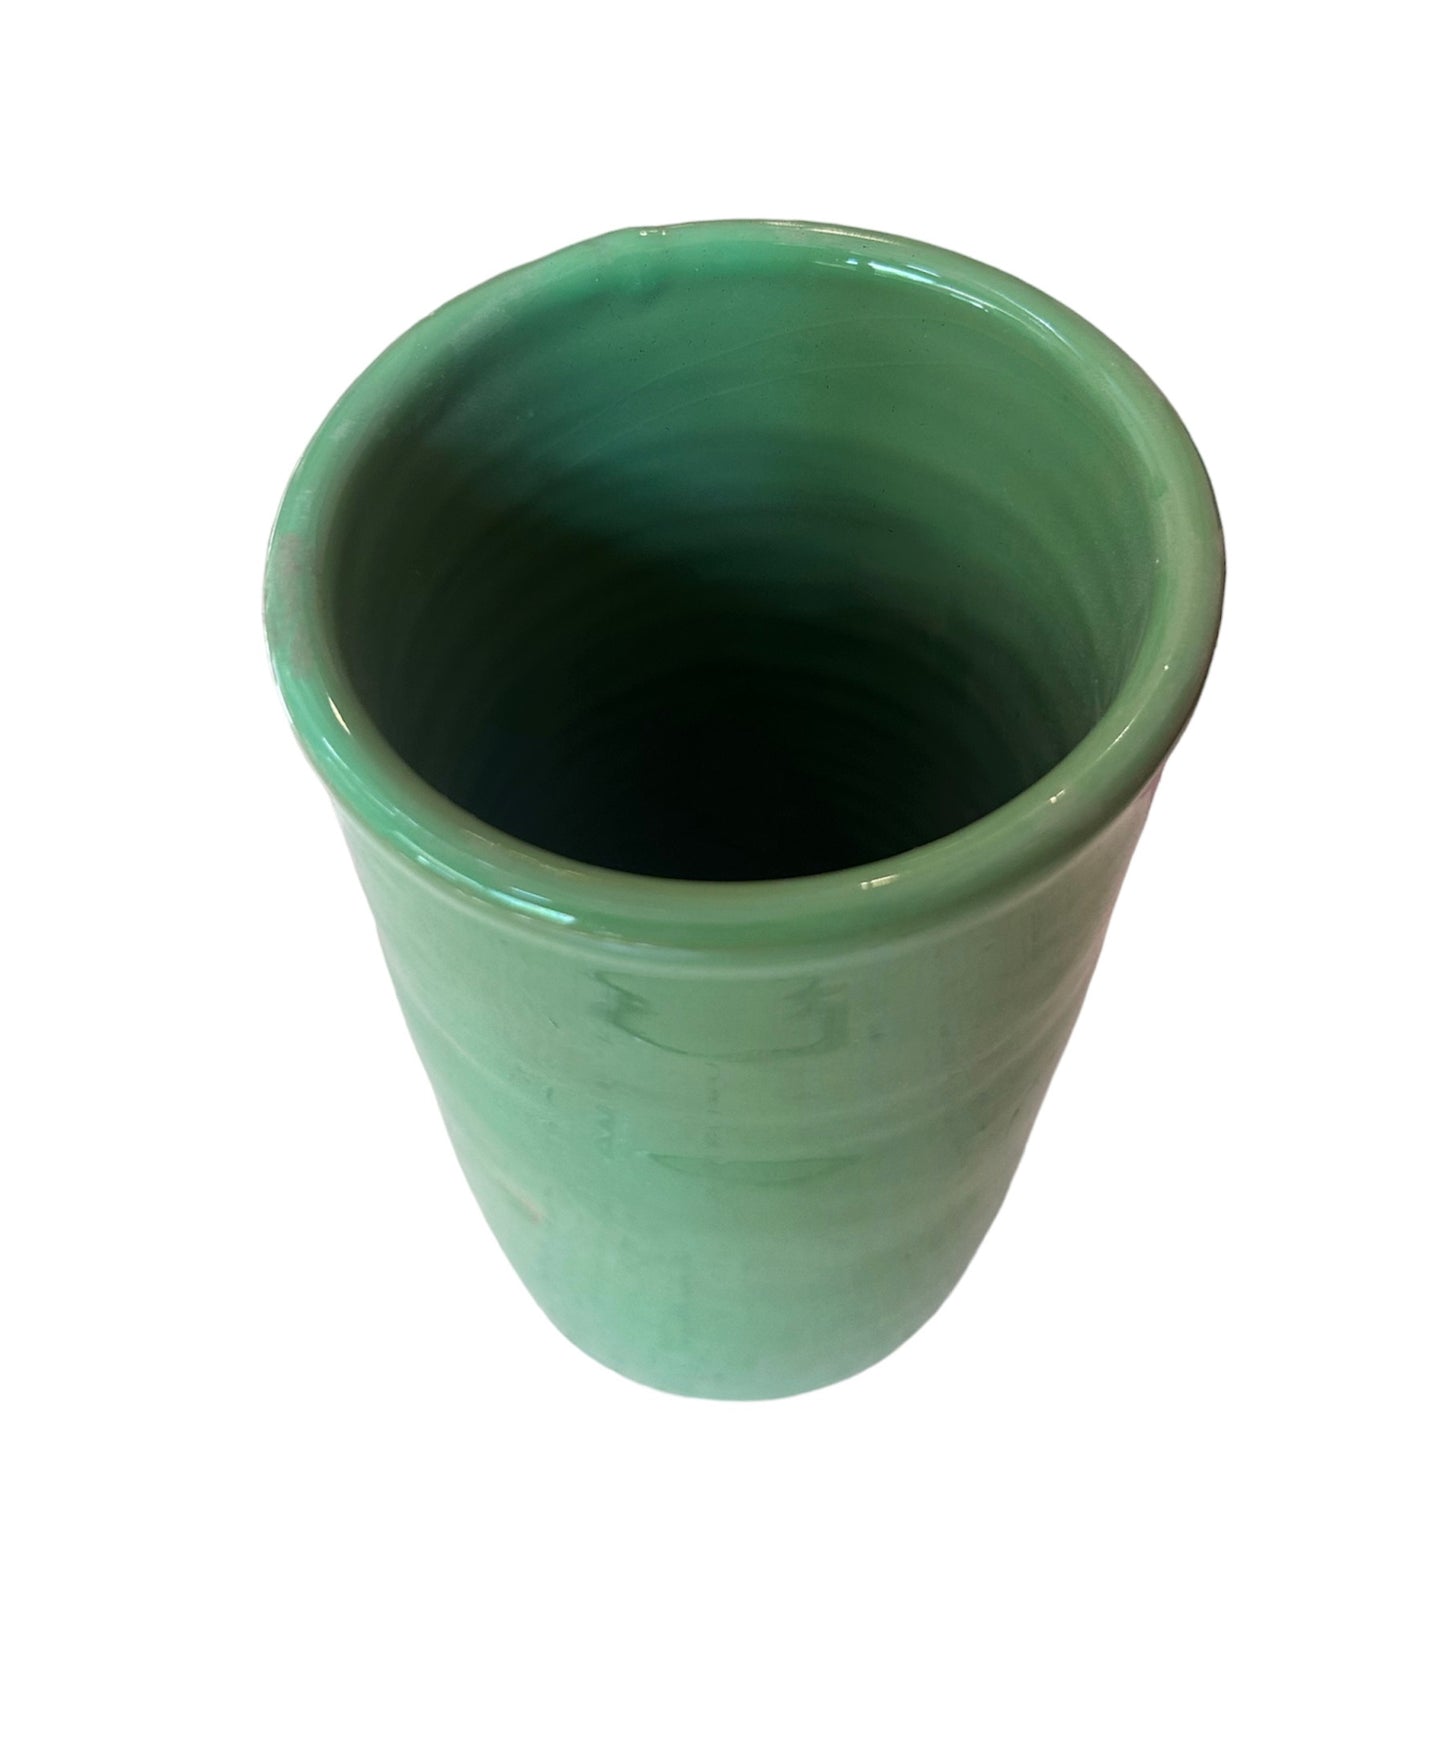 Handcrafted Ceramic Vase